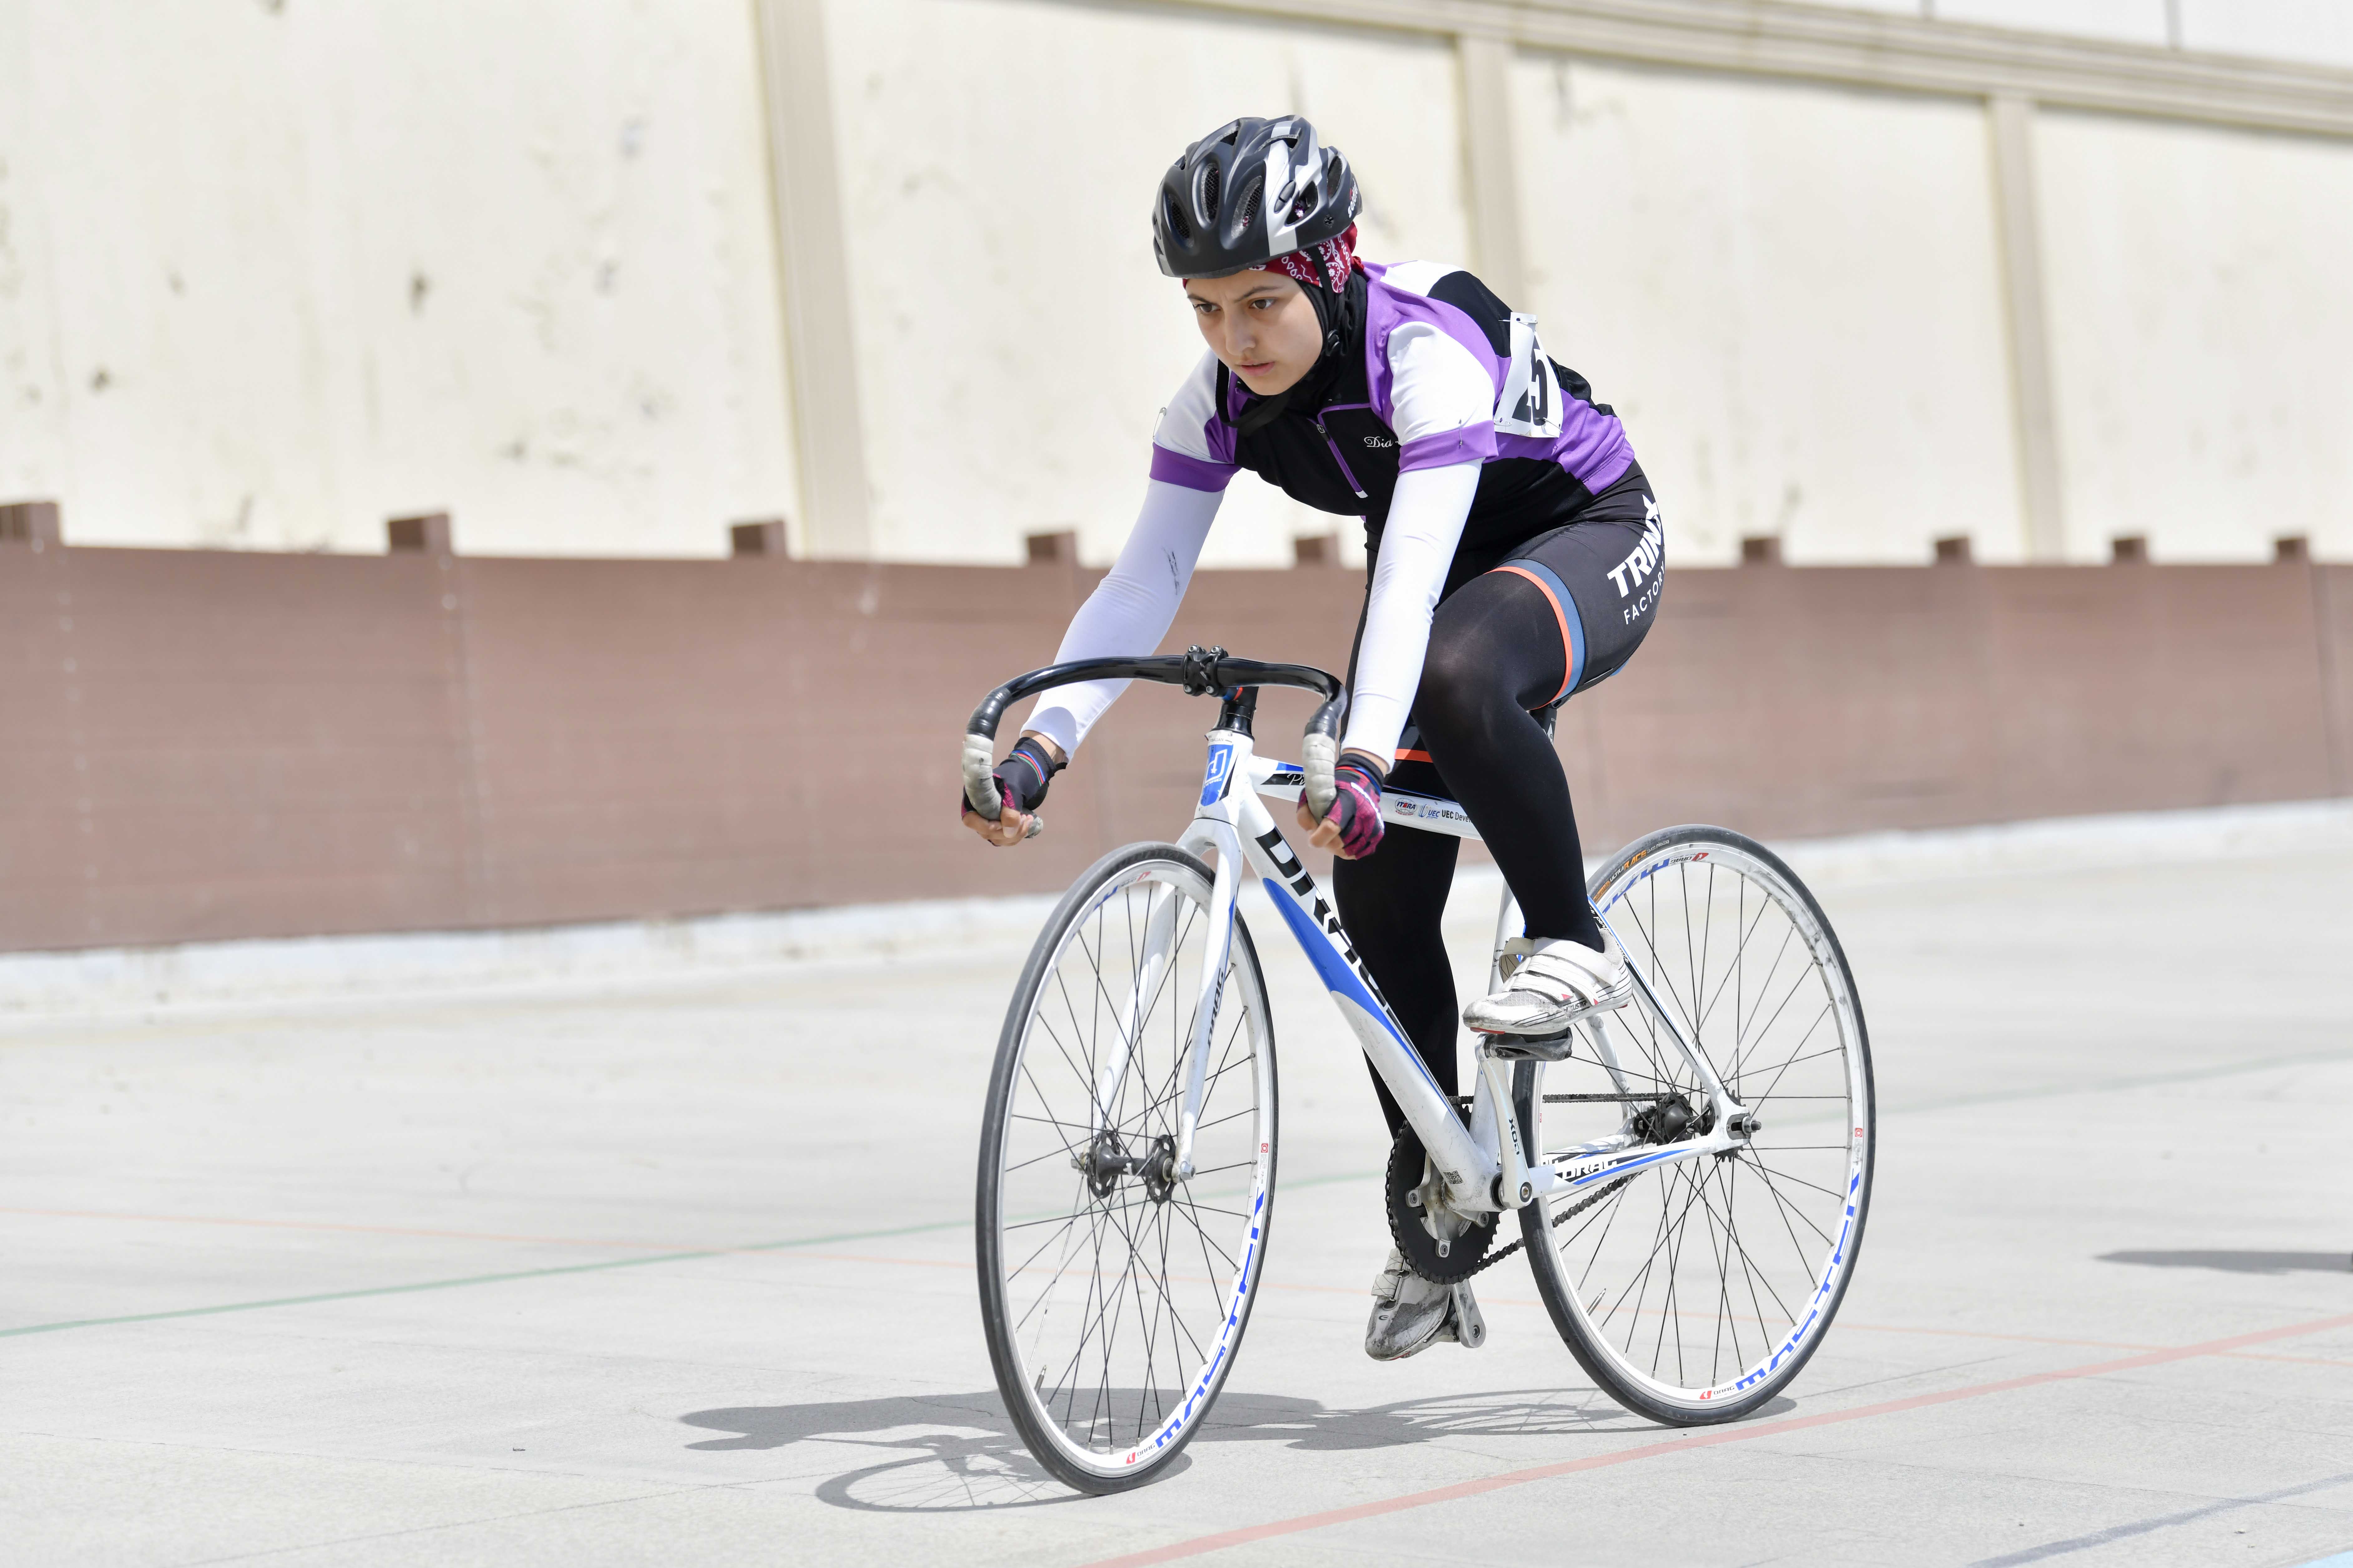 Trek velosipedi üzrə Azərbaycan çempionatına start verilib